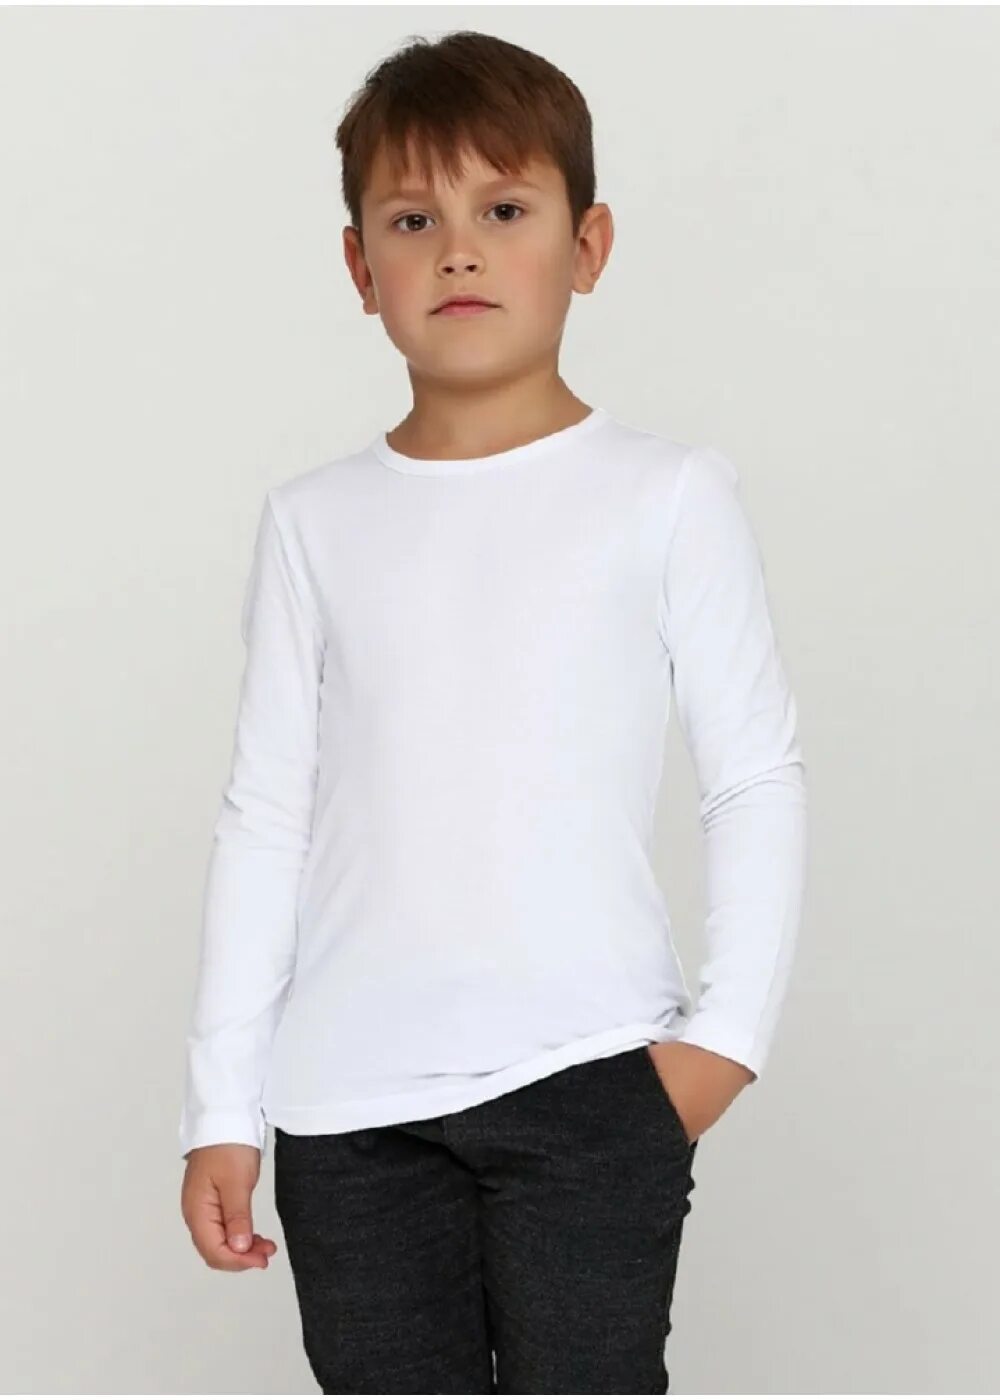 Длинные футболки для мальчиков. Футболки с длинным рукавом для мальчиков. Белый лонгслив для мальчика. Мальчик в белая футболка с длинными рукавами. Мальчик в белой кофте.